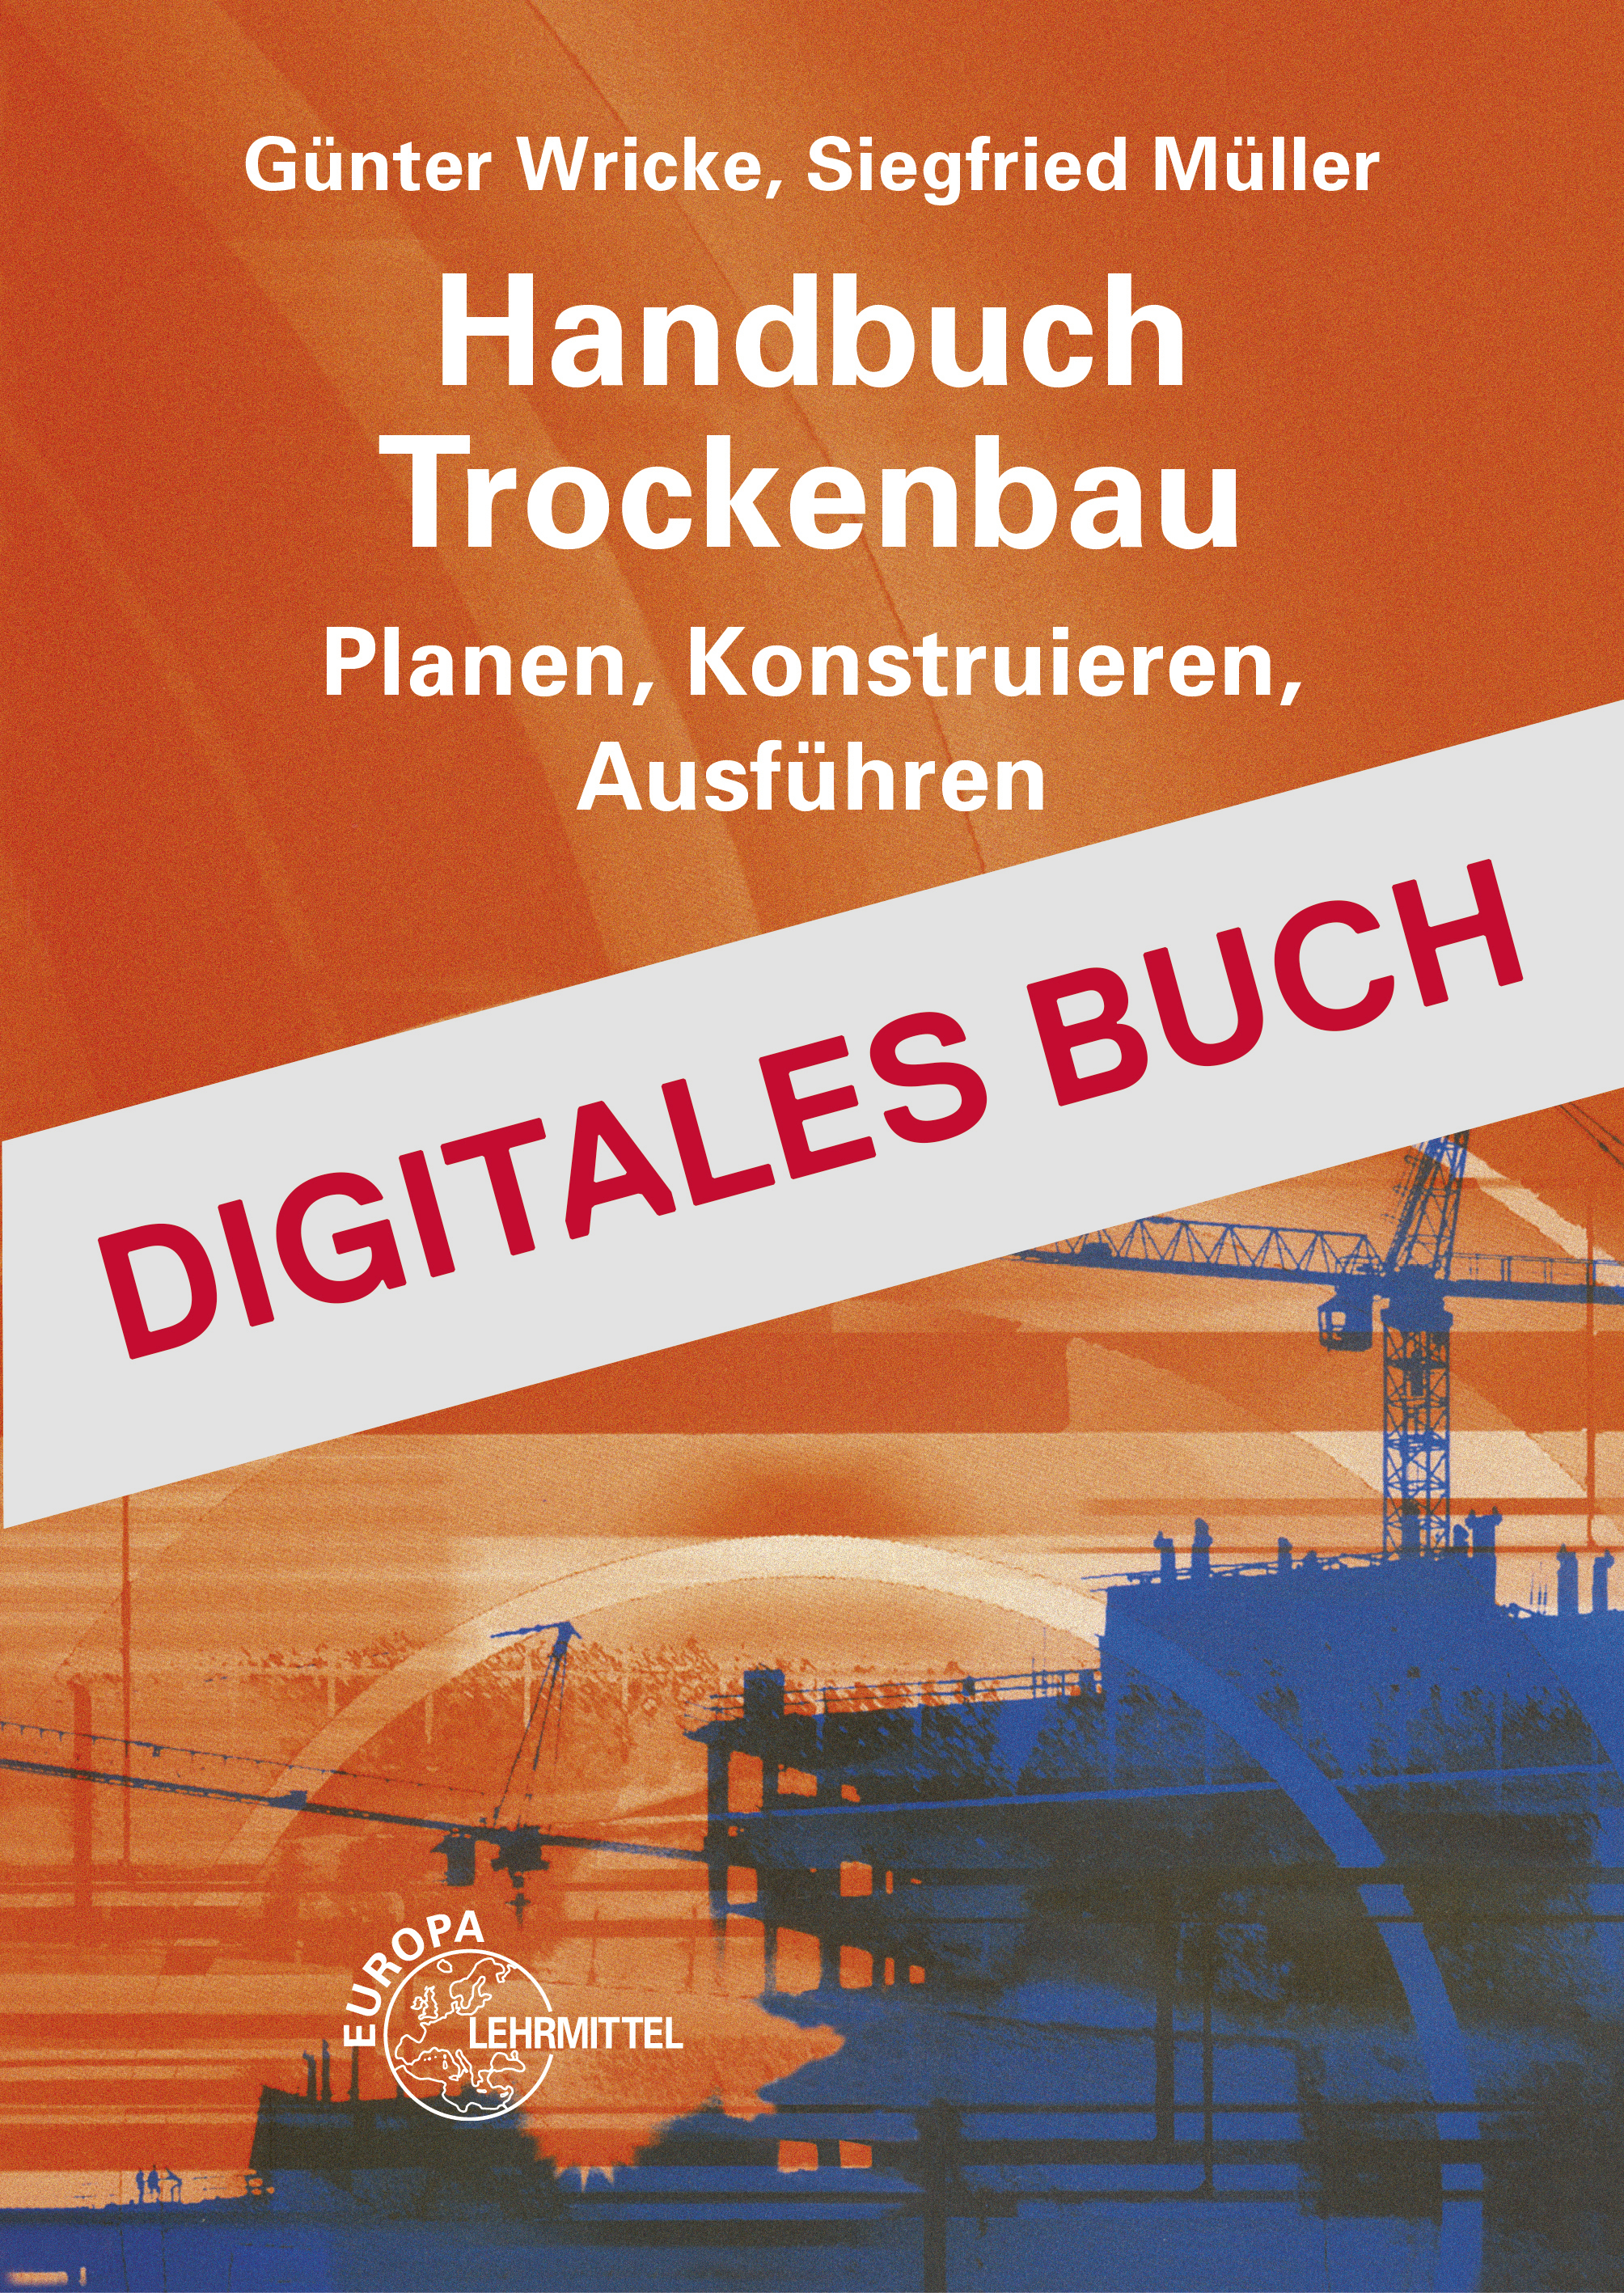 Handbuch Trockenbau - Digitales Buch